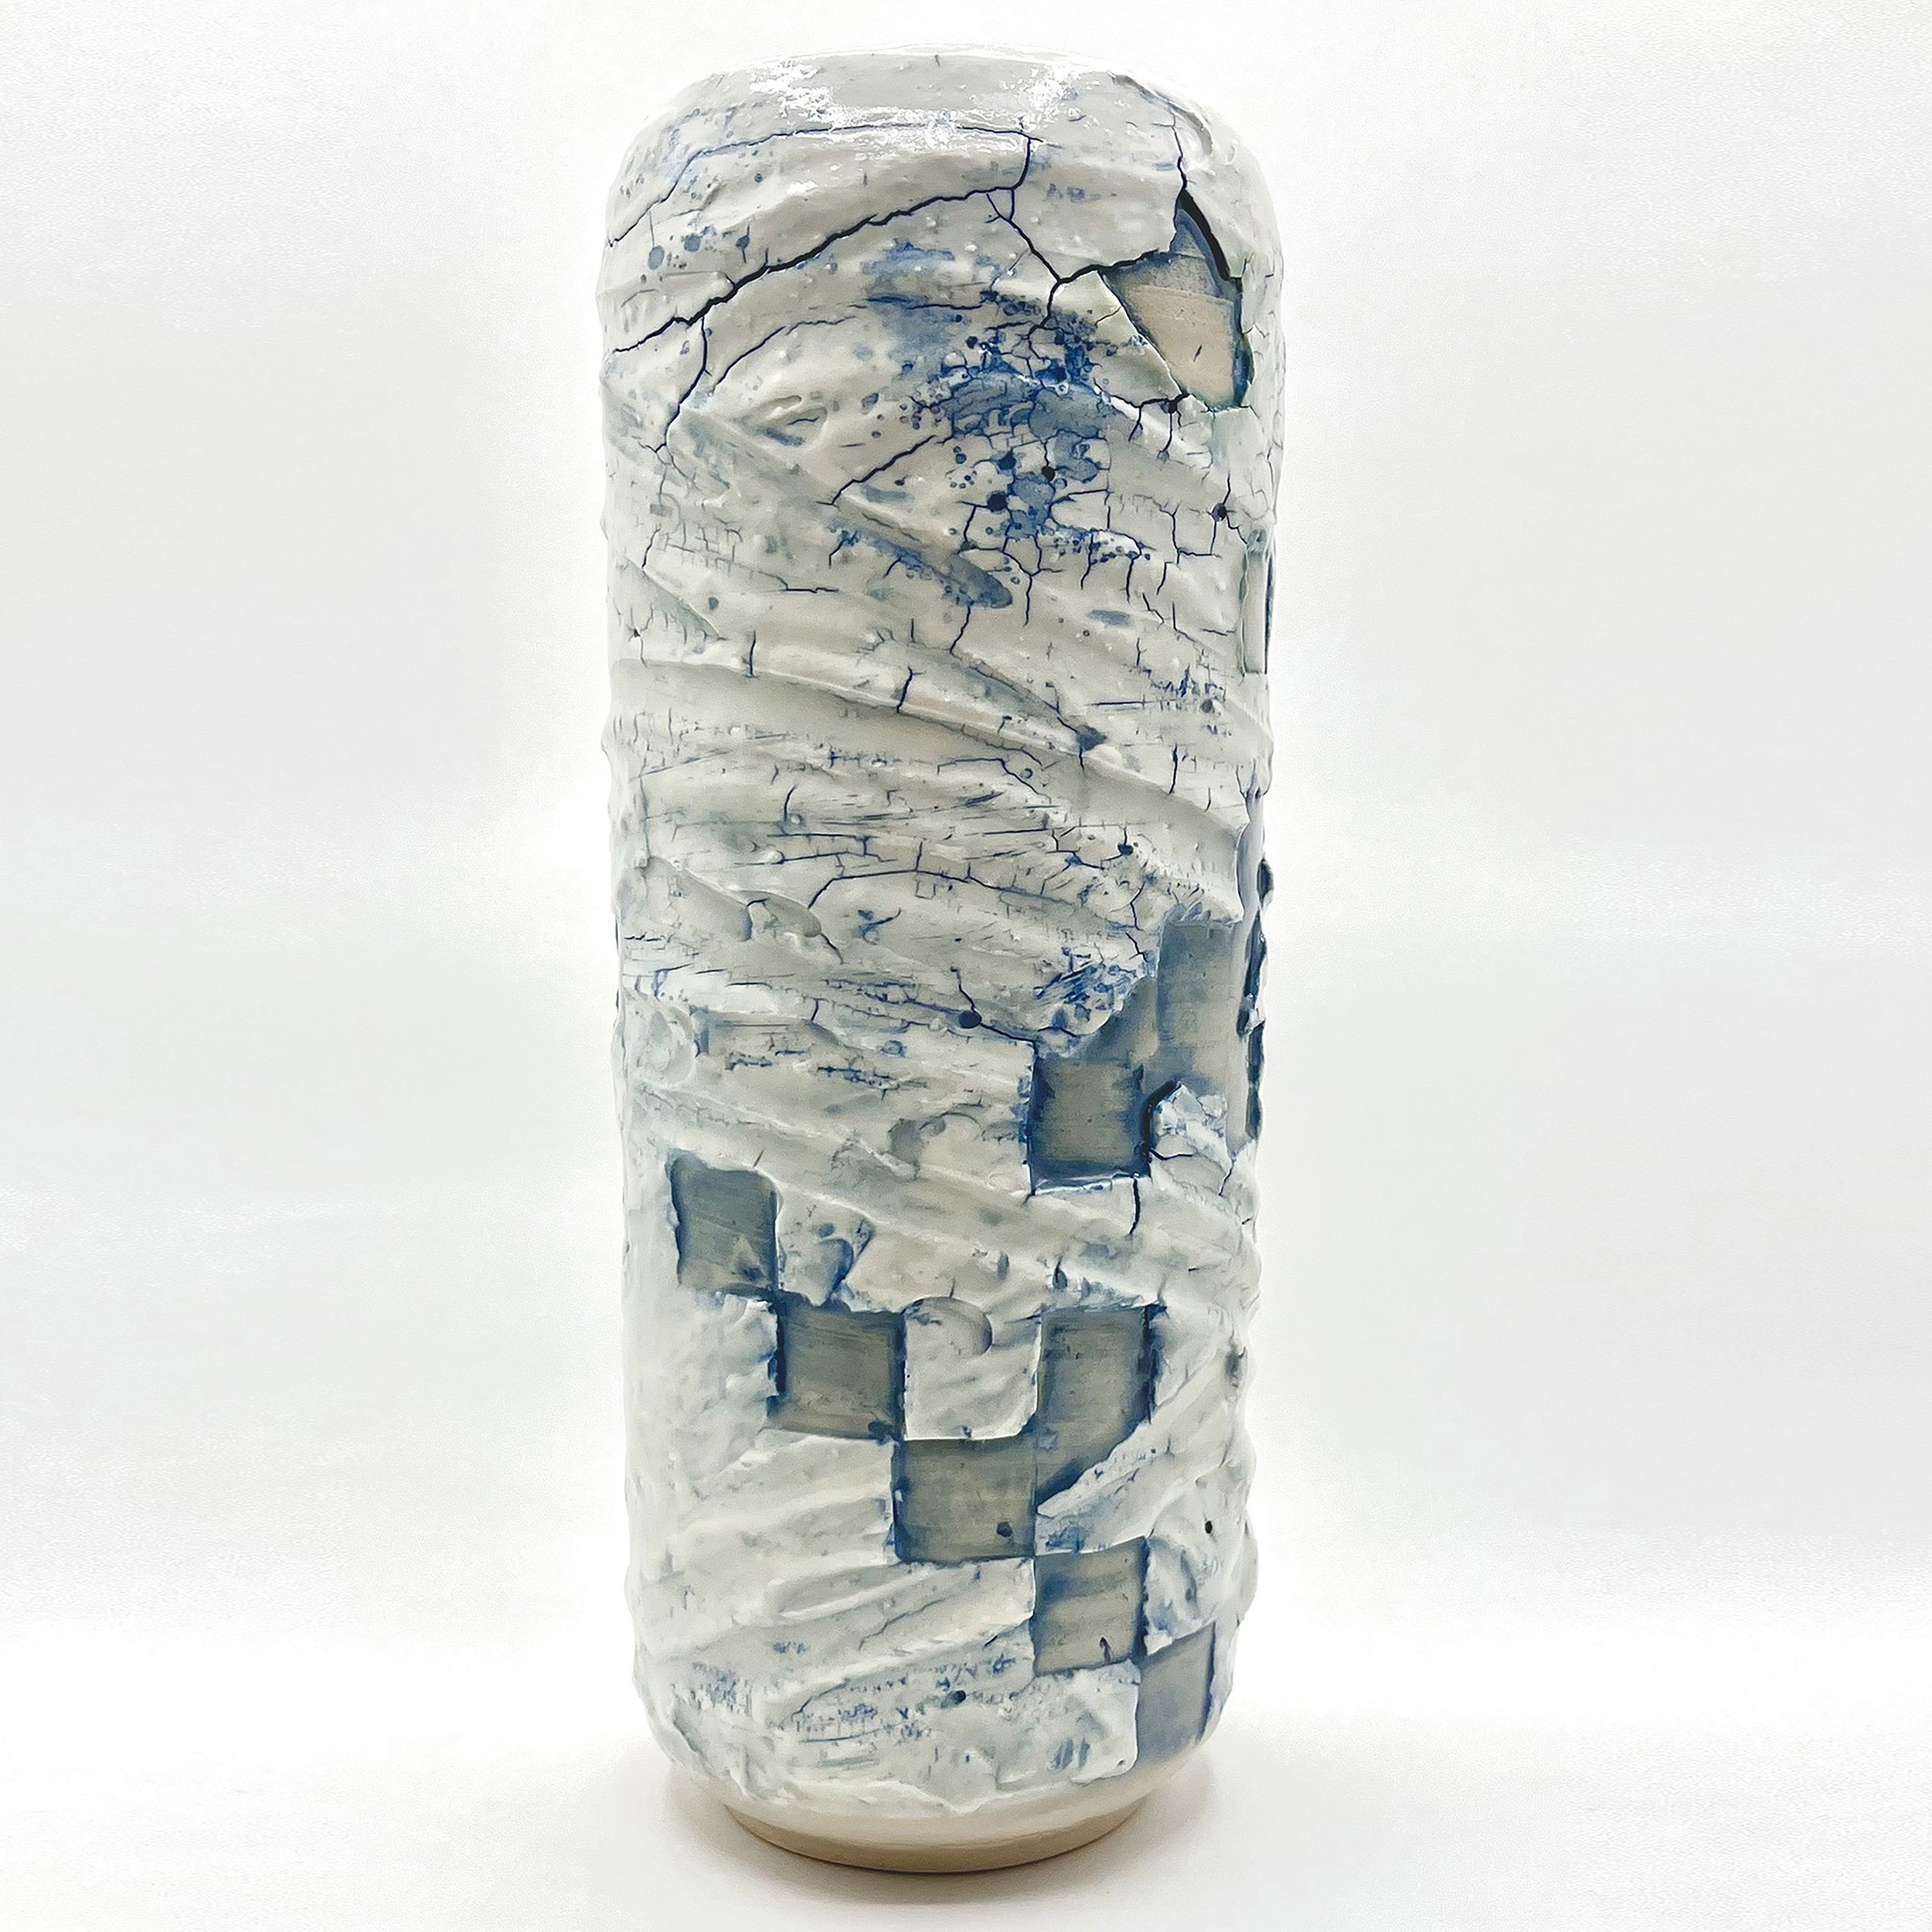 Christophe ceramics 3 - Ice melting vase.jpg